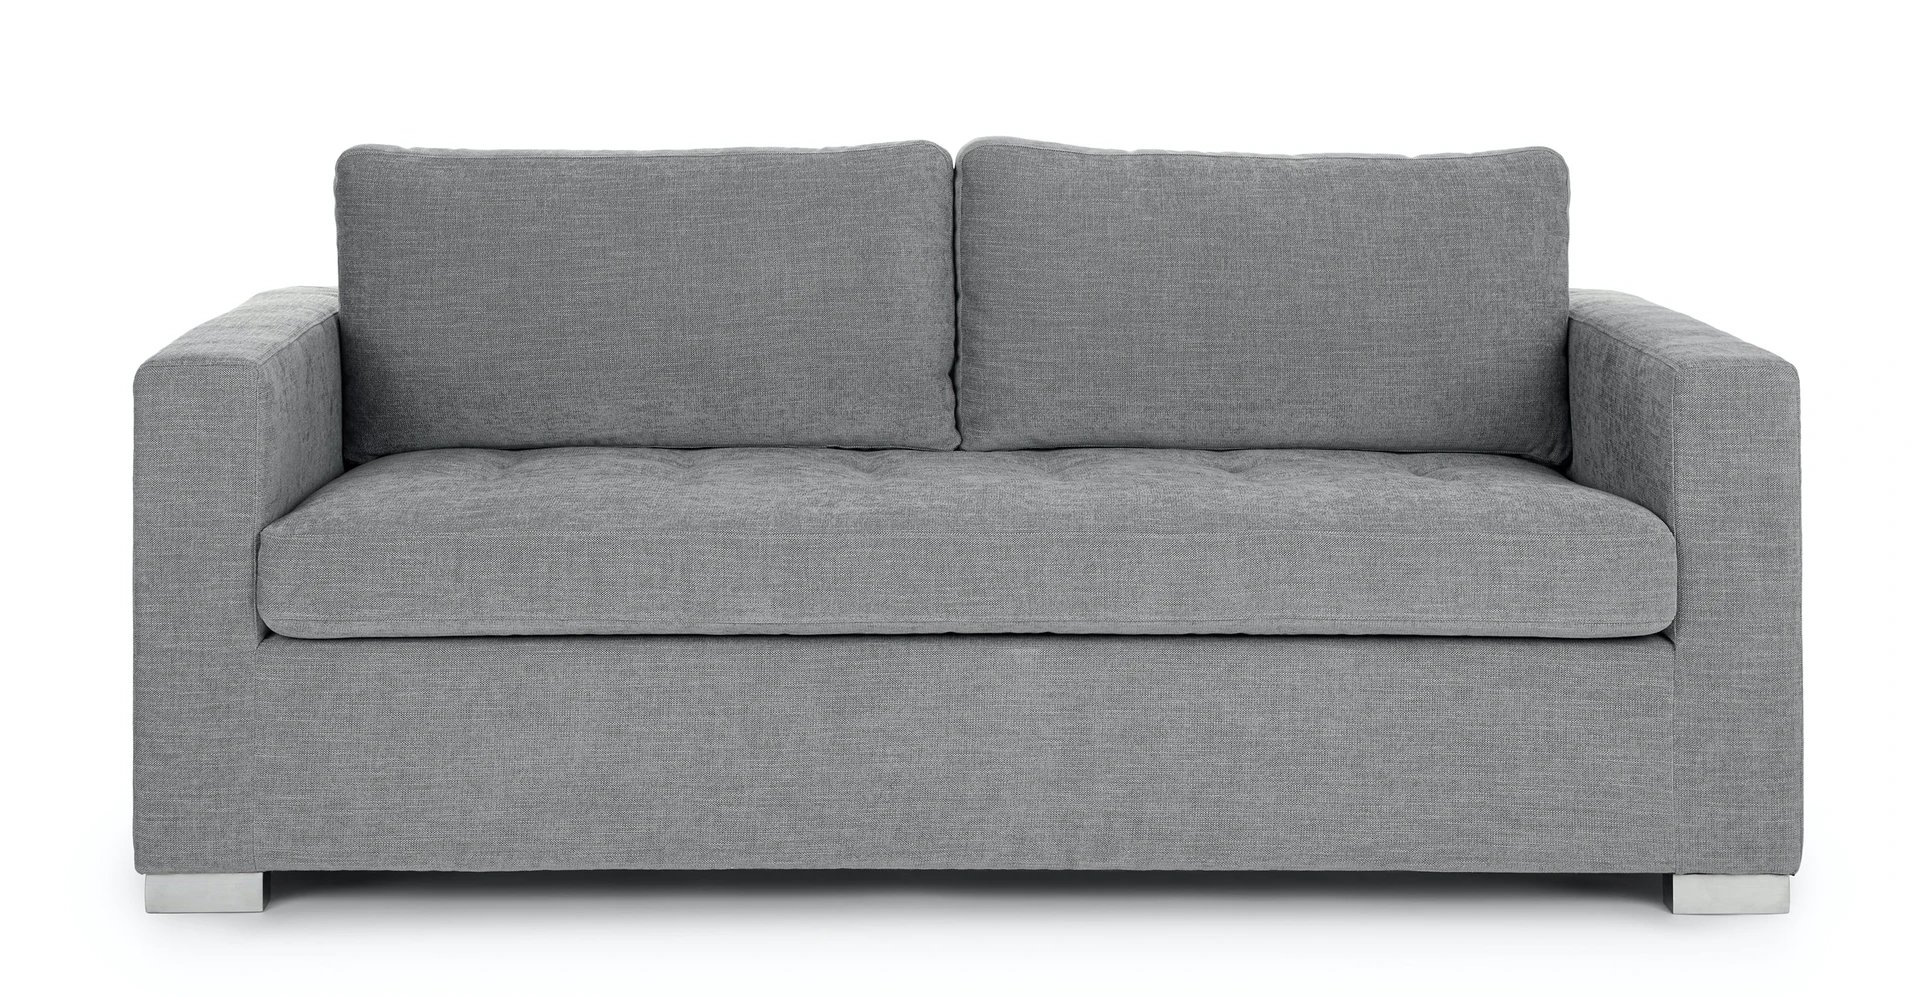 soma dawn gray right sofa bed